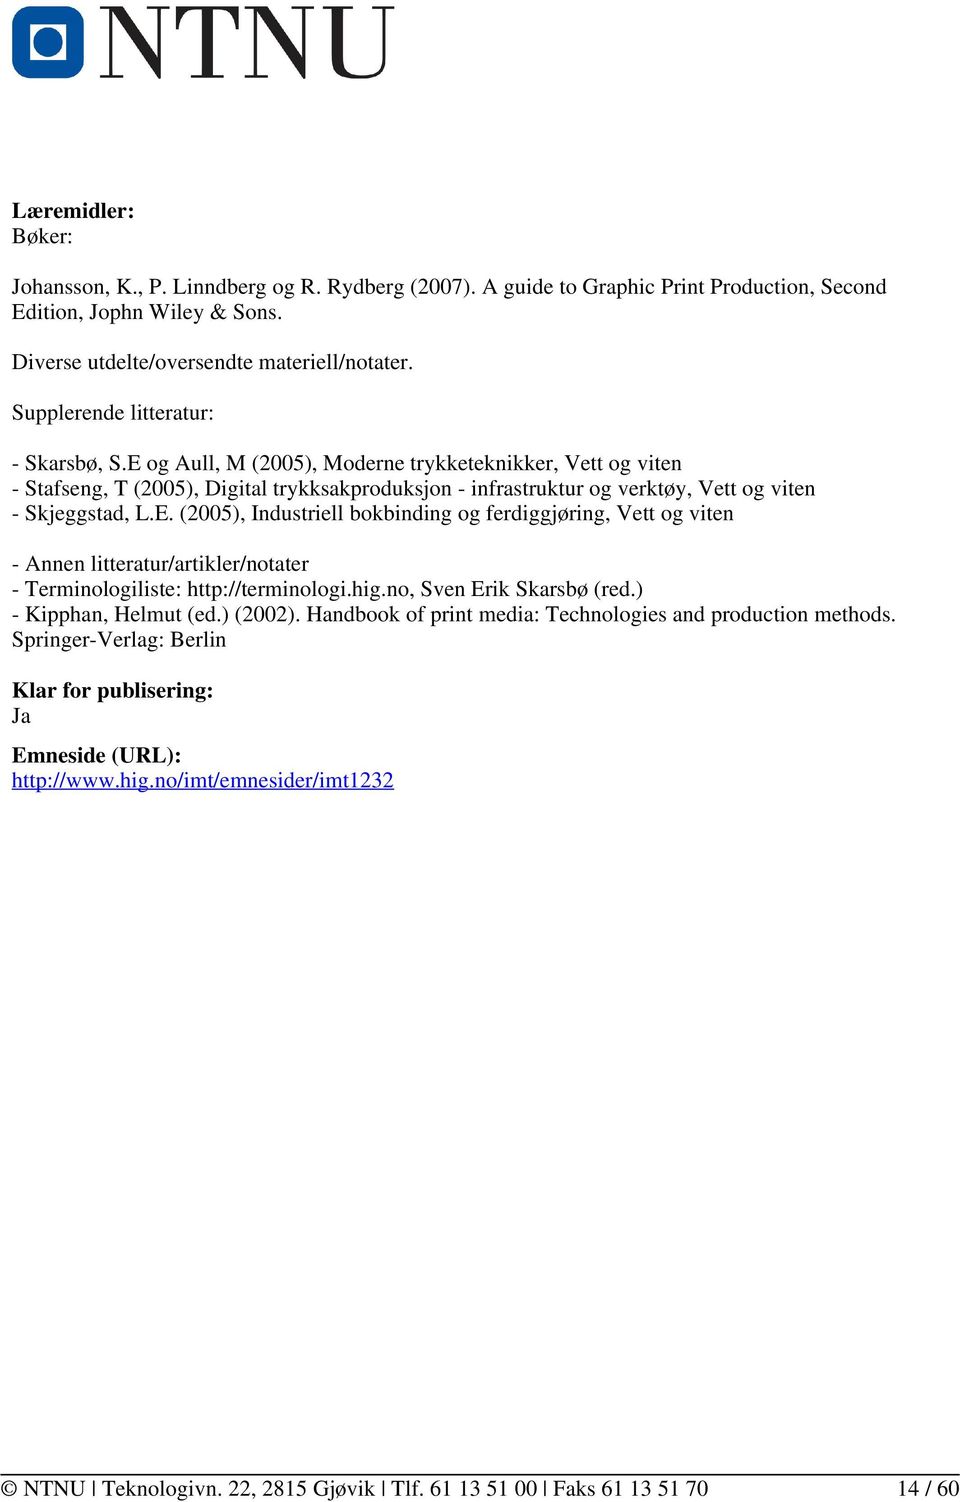 E og Aull, M (2005), Moderne trykketeknikker, Vett og viten - Stafseng, T (2005), Digital trykksakproduksjon - infrastruktur og verktøy, Vett og viten - Skjeggstad, L.E. (2005), Industriell bokbinding og ferdiggjøring, Vett og viten - Annen litteratur/artikler/notater - Terminologiliste: http://terminologi.